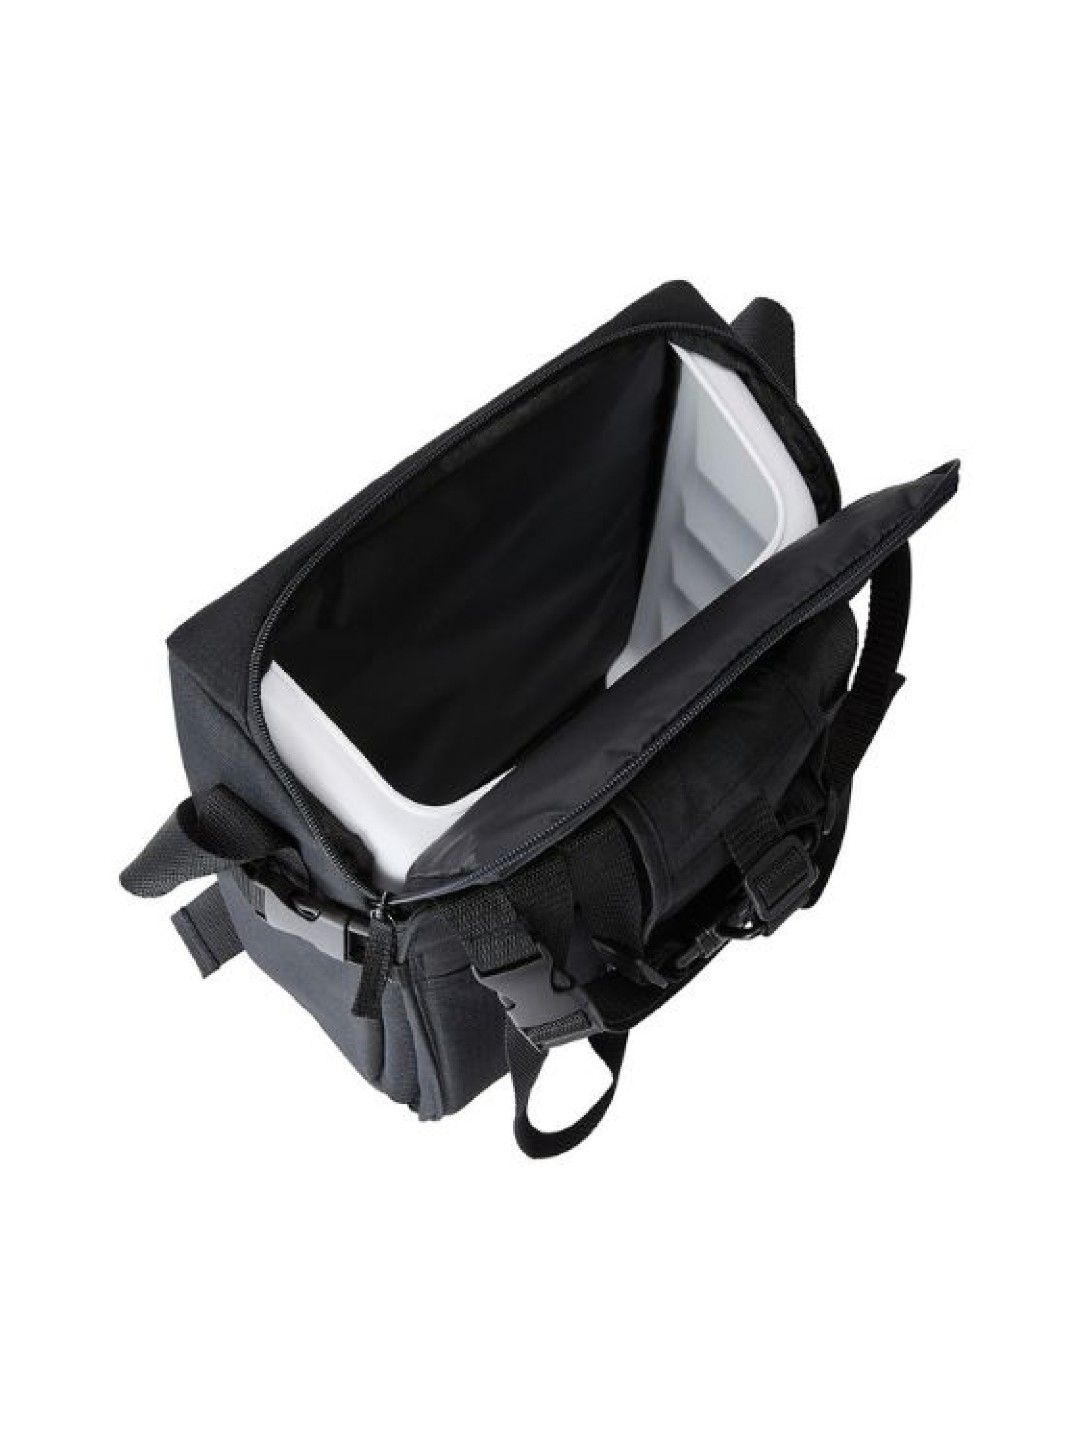 Anko Portable Feeding Booster Seat (Black- Image 2)